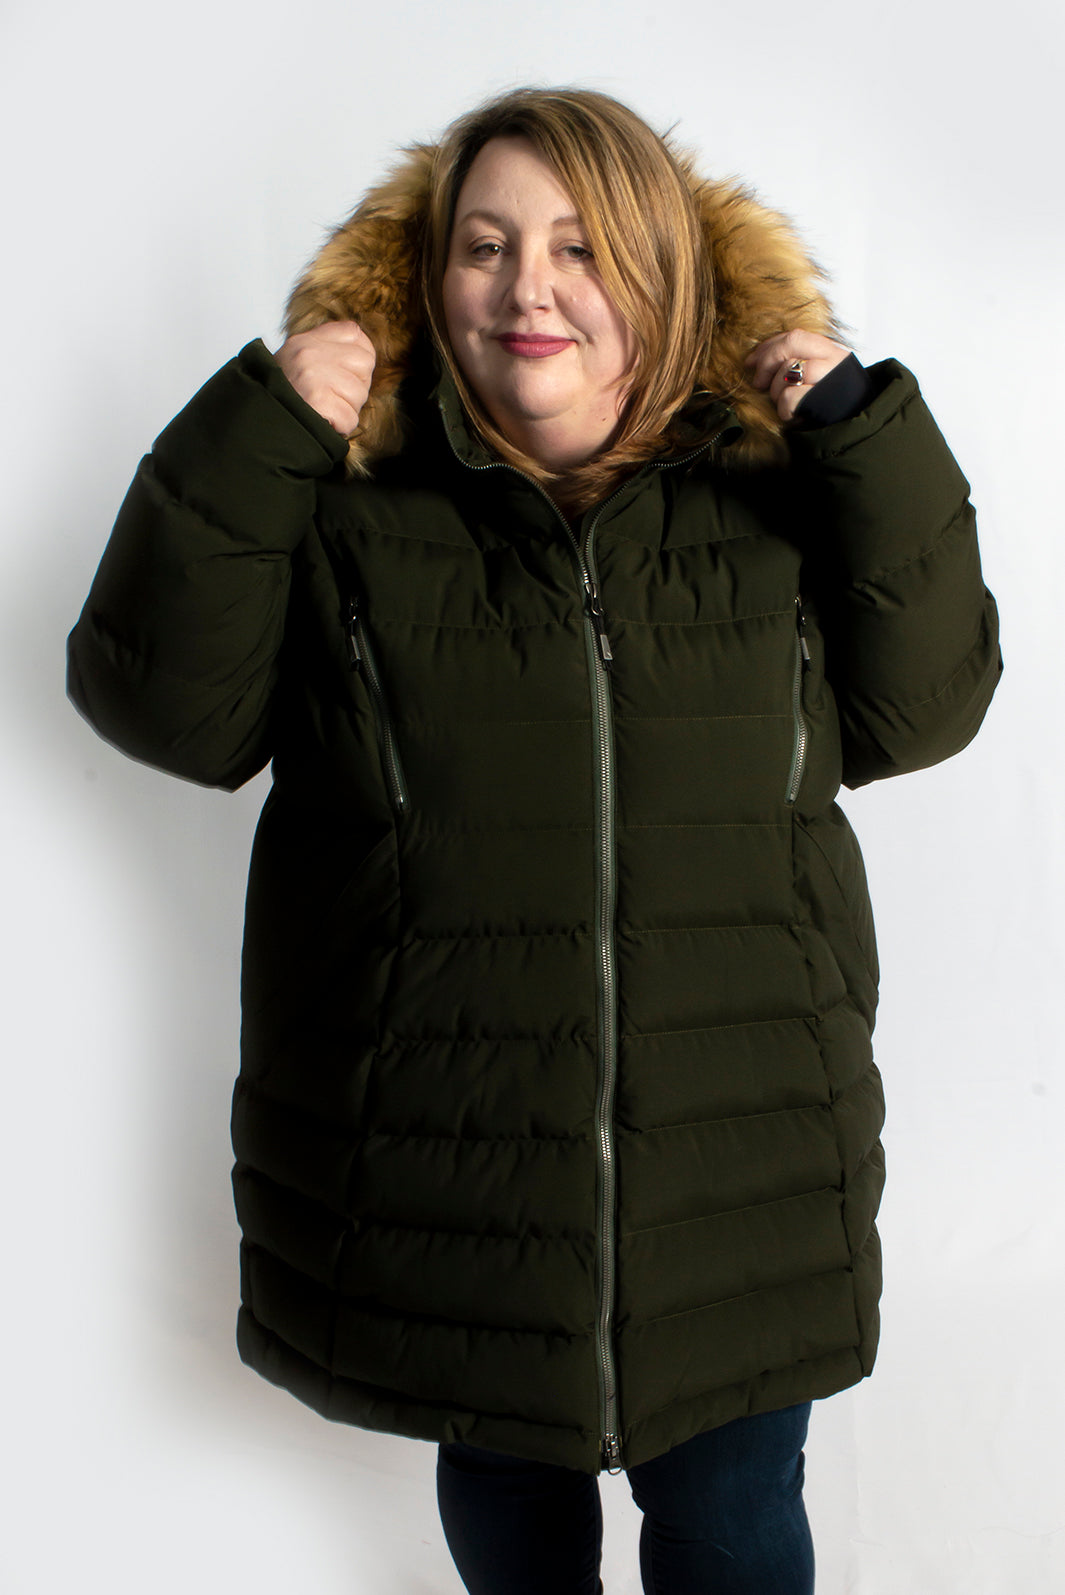 Women's winter long jacket plus size COSMO - 44752O - Alizée